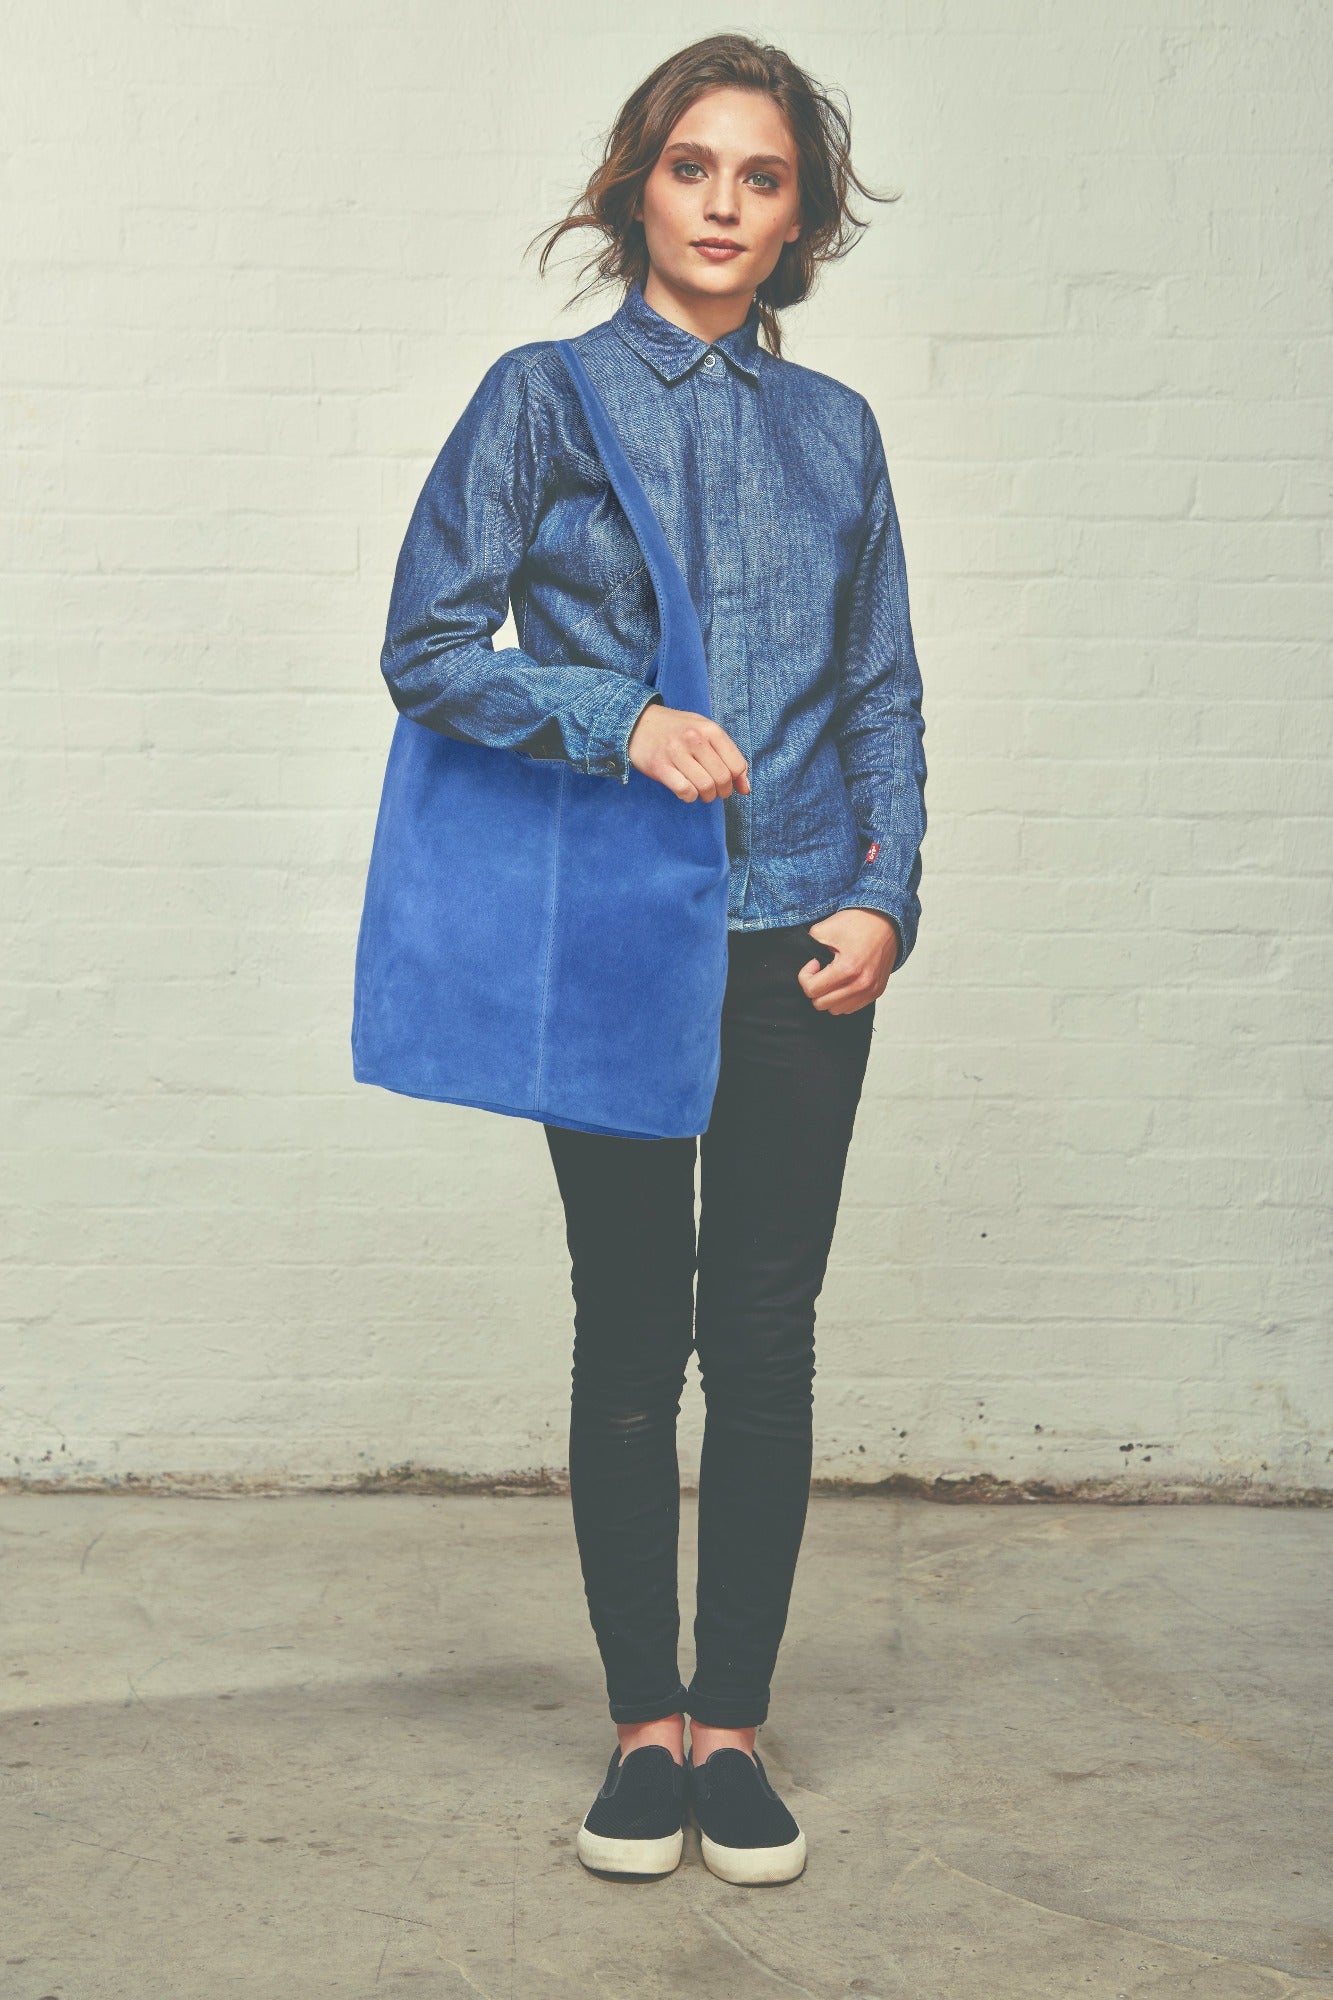 Cornflower Blue Suede Leather Hobo Boho Shoulder Bag Brix Bailey sostter